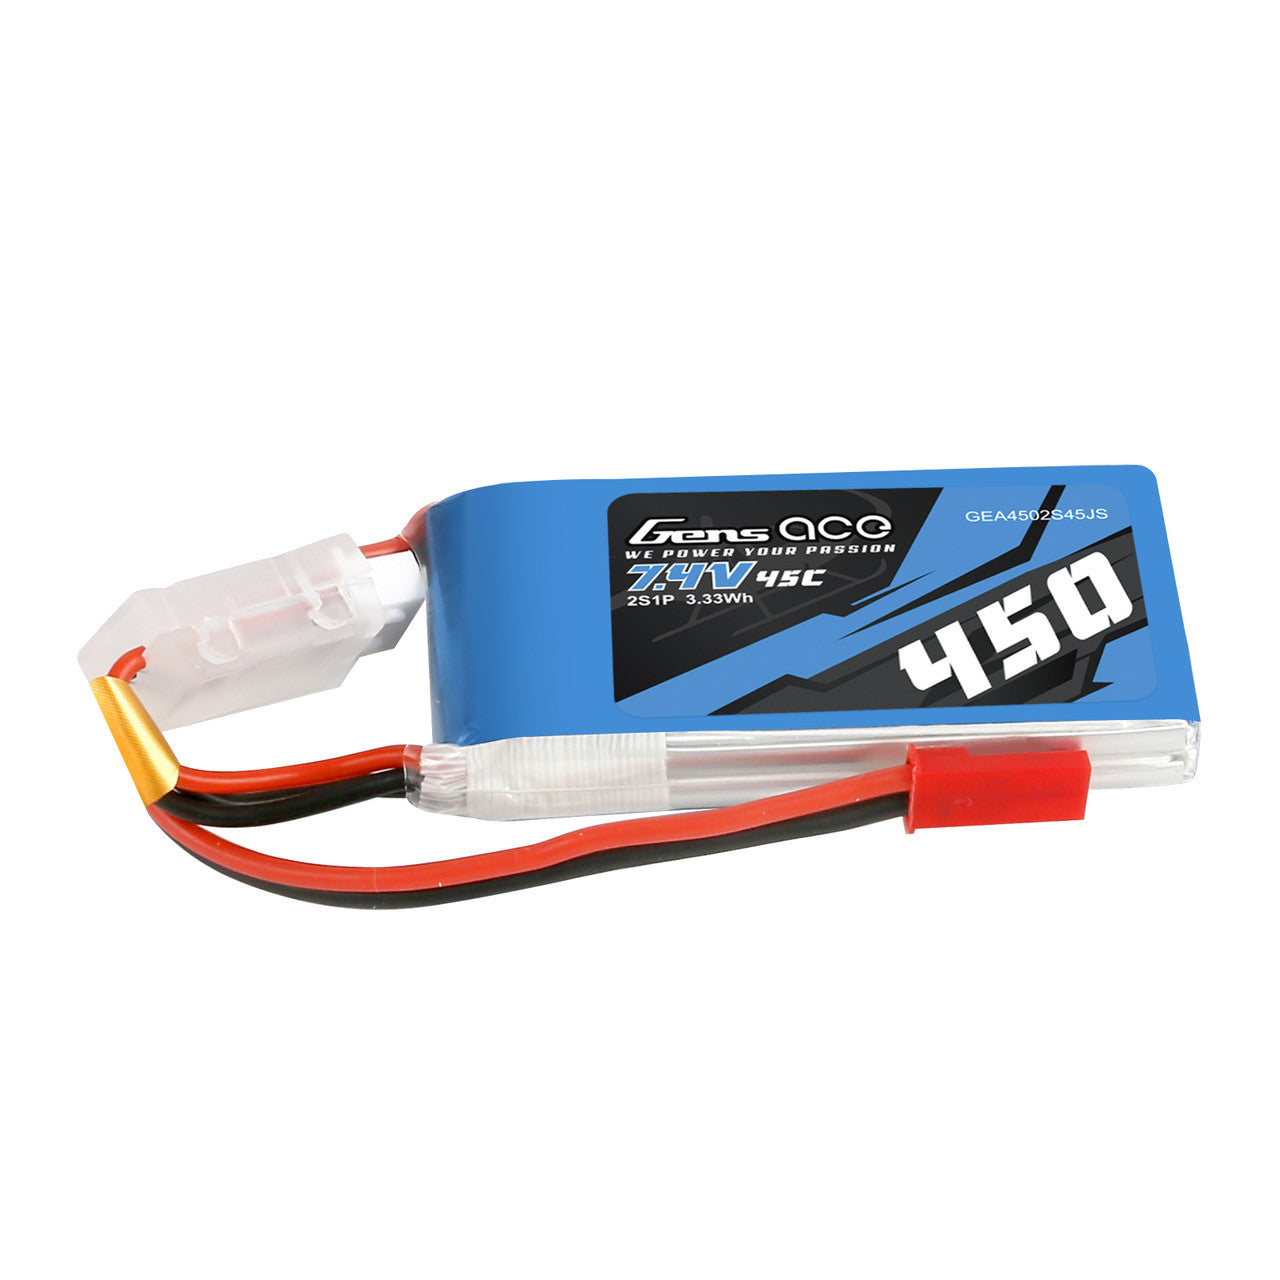 GEA4502S45JS Gens Ace 450mAh 7.4V 45C 2S1P batterie Lipo avec prise JST-SYP 